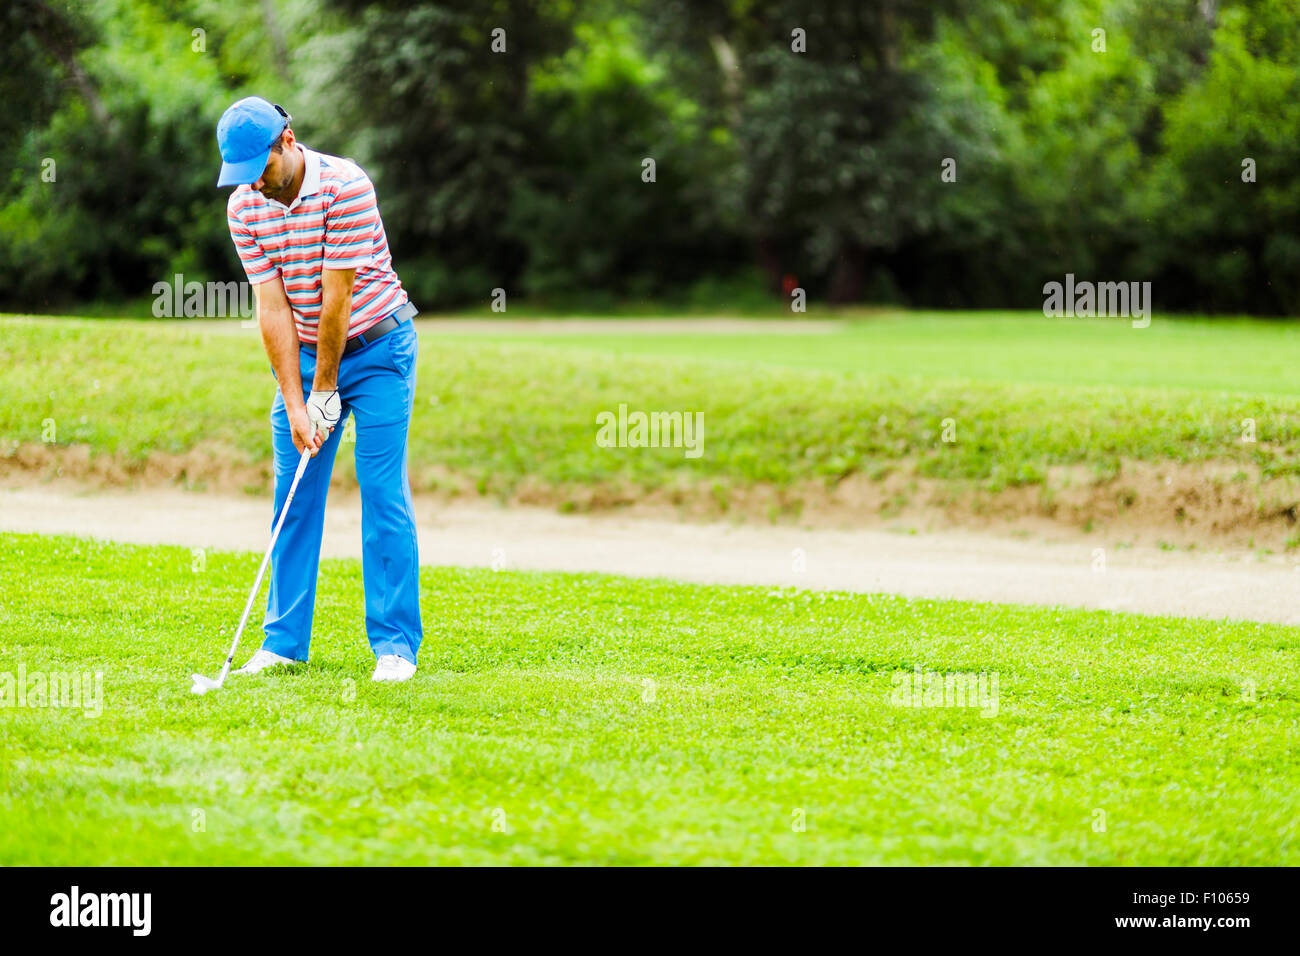 La pratique de la concentration et golfeur avant et après coup par une belle journée ensoleillée Banque D'Images